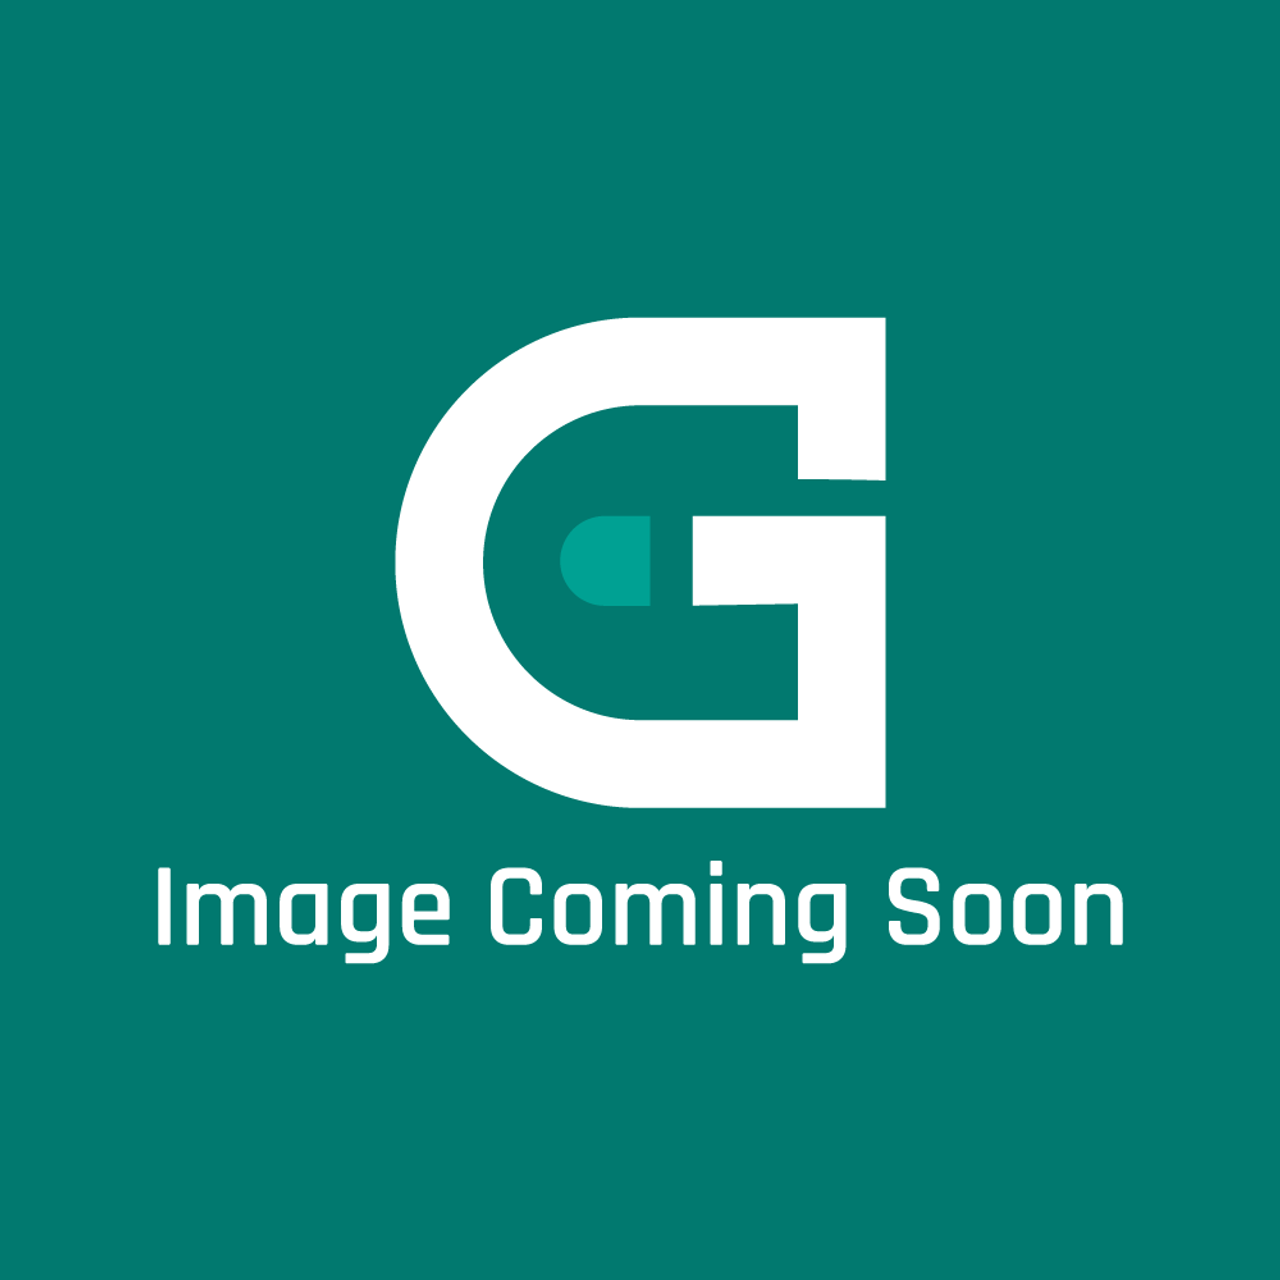 AGA Marvel AE4M230380 - Mains Lead-Elec.O/Vent(Aga027) - Image Coming Soon!